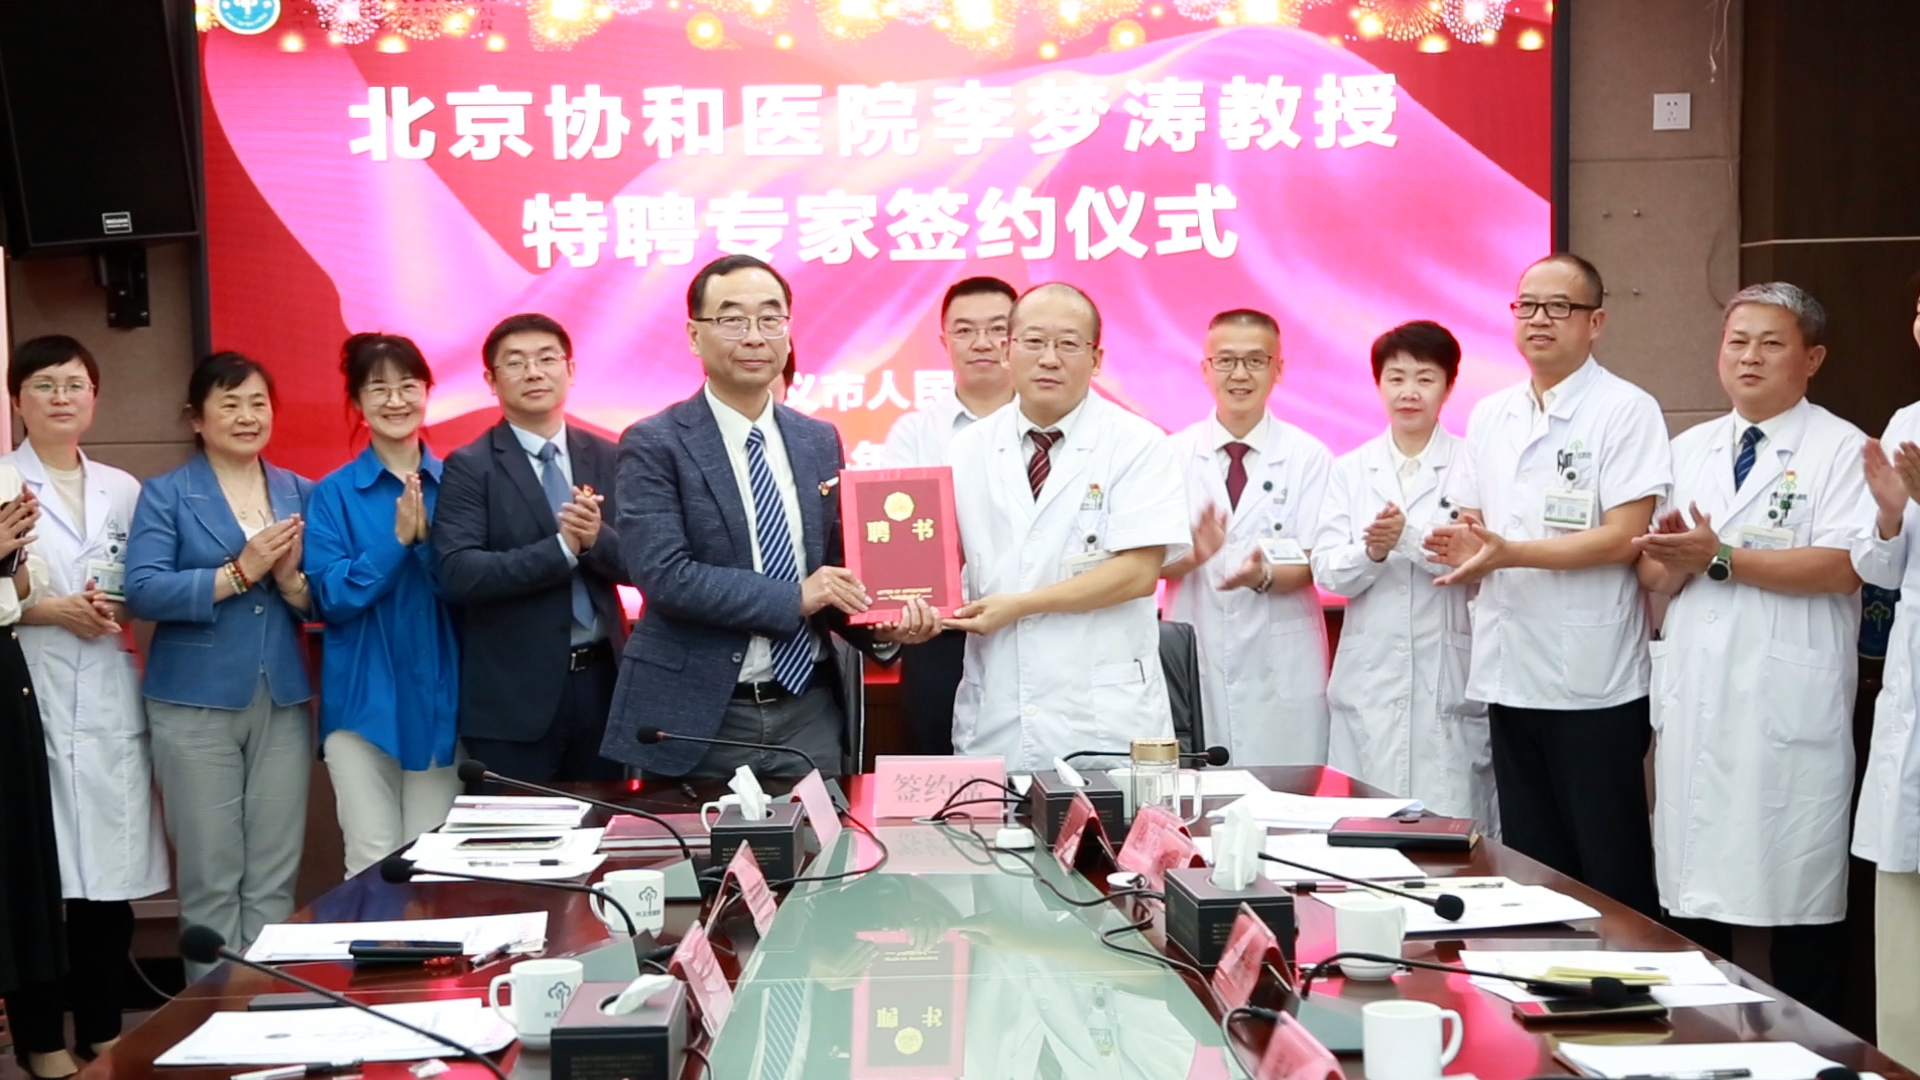 兴义市人民医院与北京协和医院共建医联体, 还成立了黔西南州医学会